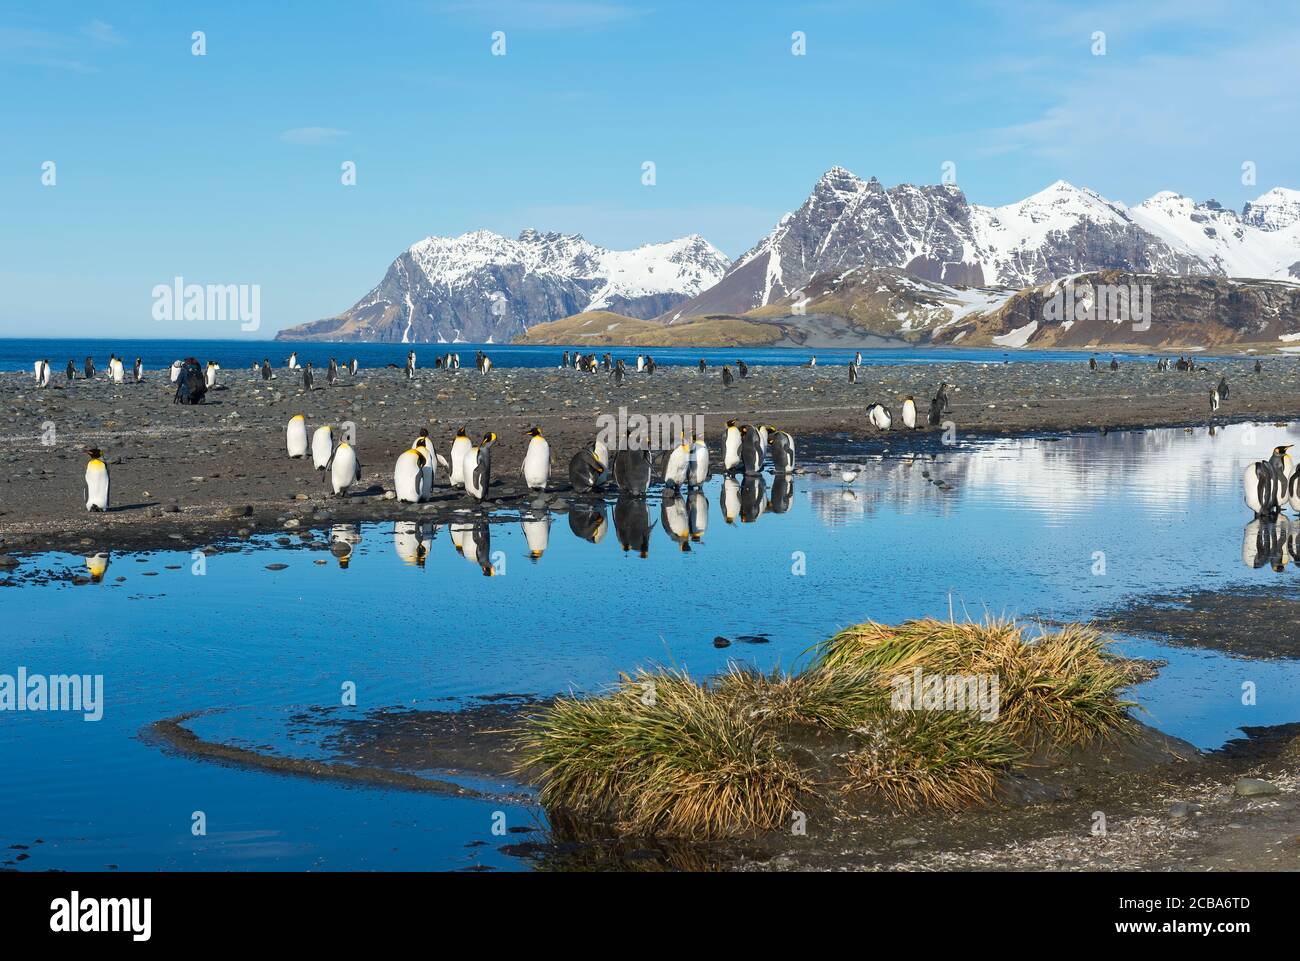 Colonia di pinguini di Re (Appenodytes patagonicus) e montagne coperte di neve che riflettono in acqua, Salisbury Plain, South Georgia Island, Antartico Foto Stock